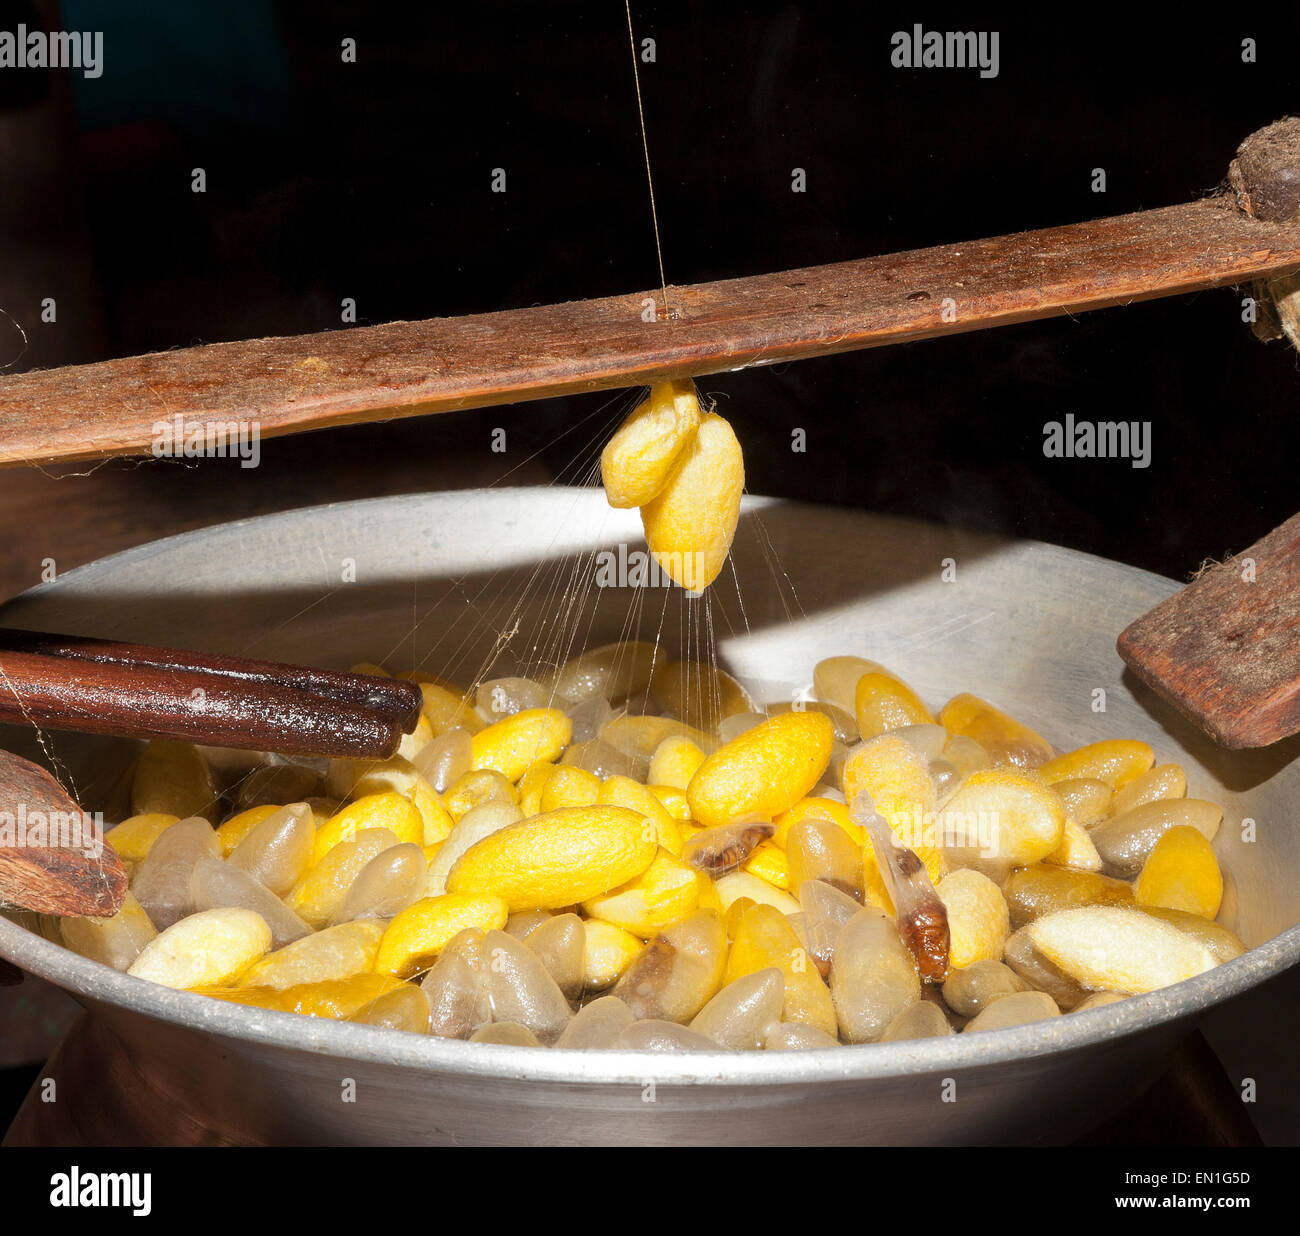 Les travailleurs de la soie, pot d'eau chaude contenant les cocons de soie, jaune sont thaïlandais, le blanc sont chinois, Chiang Mai, Thaïlande Banque D'Images